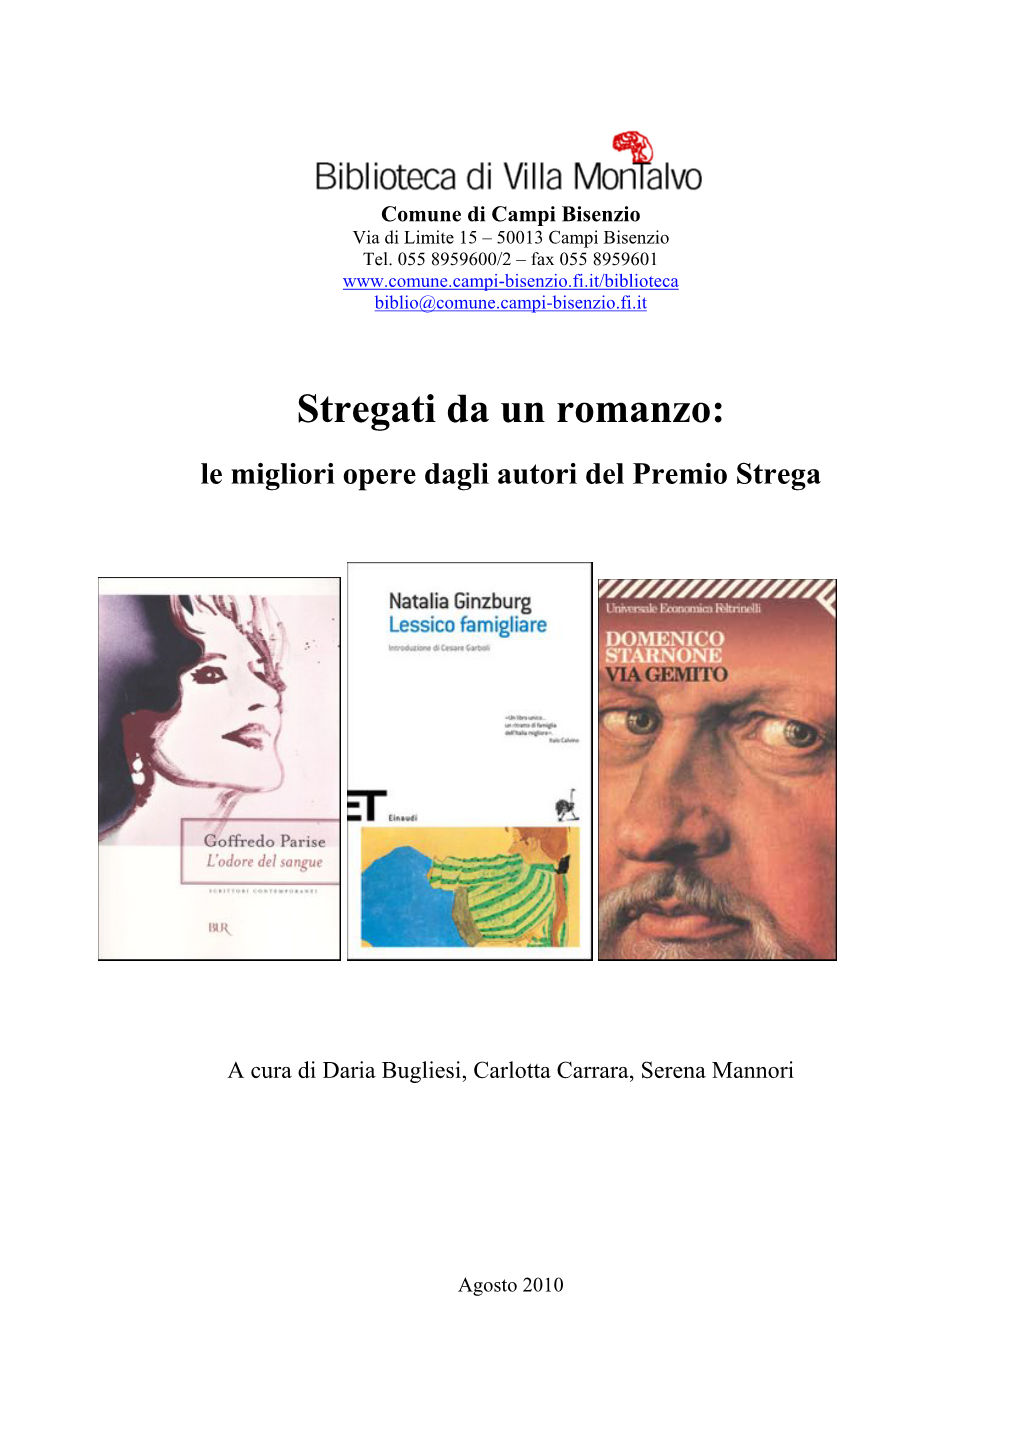 Stregati Da Un Romanzo: Le Migliori Opere Dagli Autori Del Premio Strega